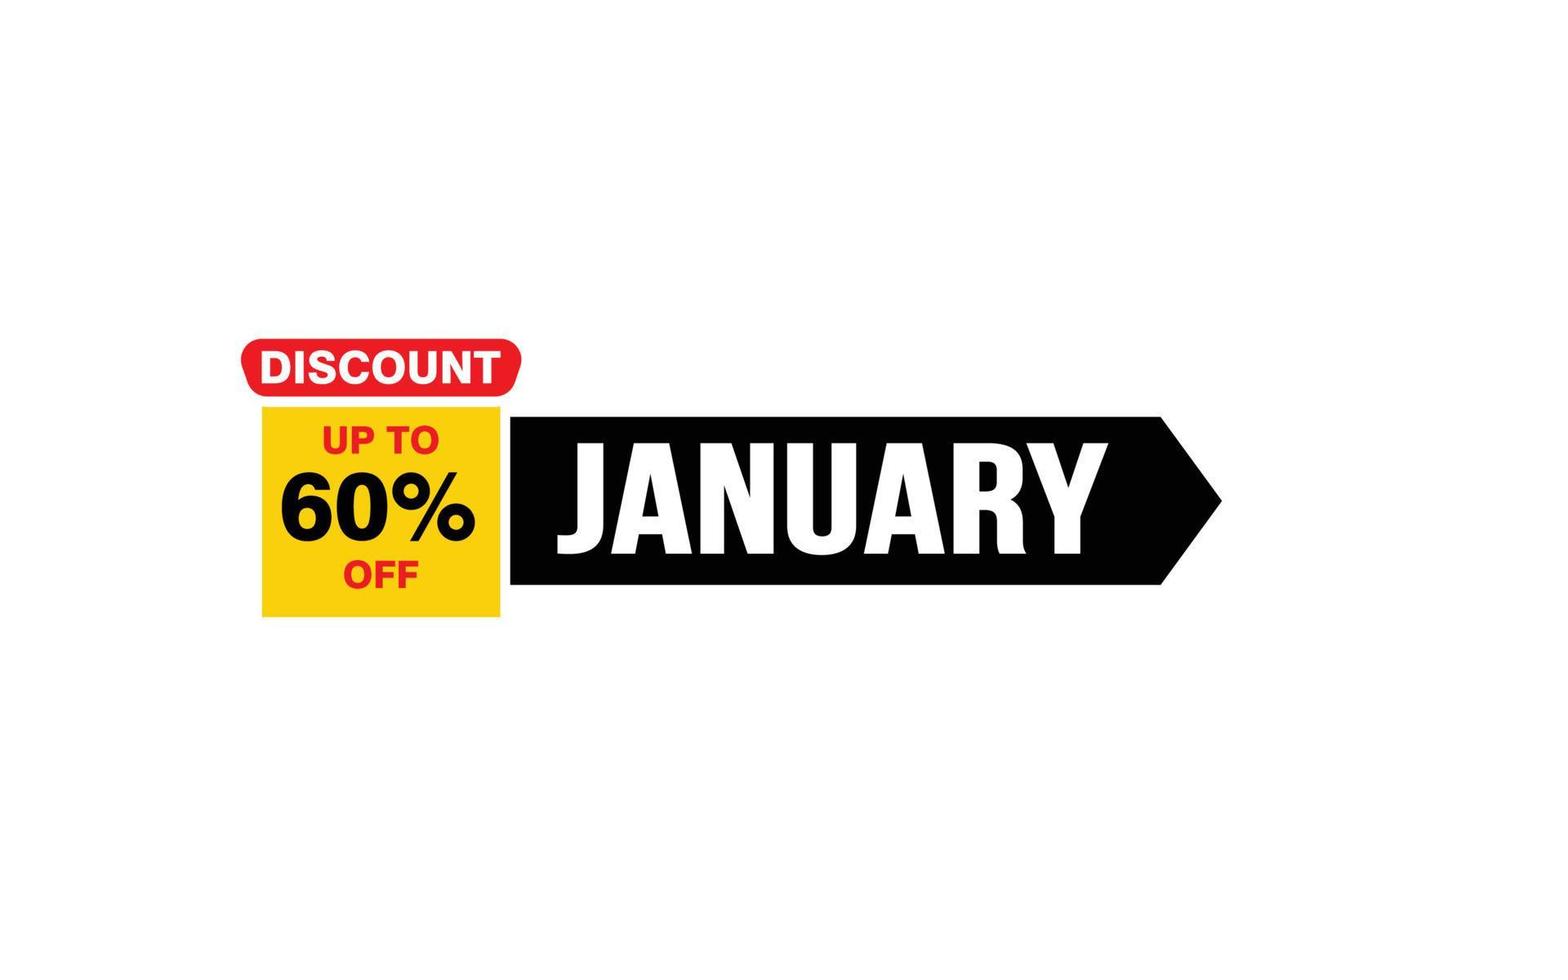 Offre de réduction de 60 % en janvier, dédouanement, mise en page de la bannière de promotion avec style d'autocollant. vecteur